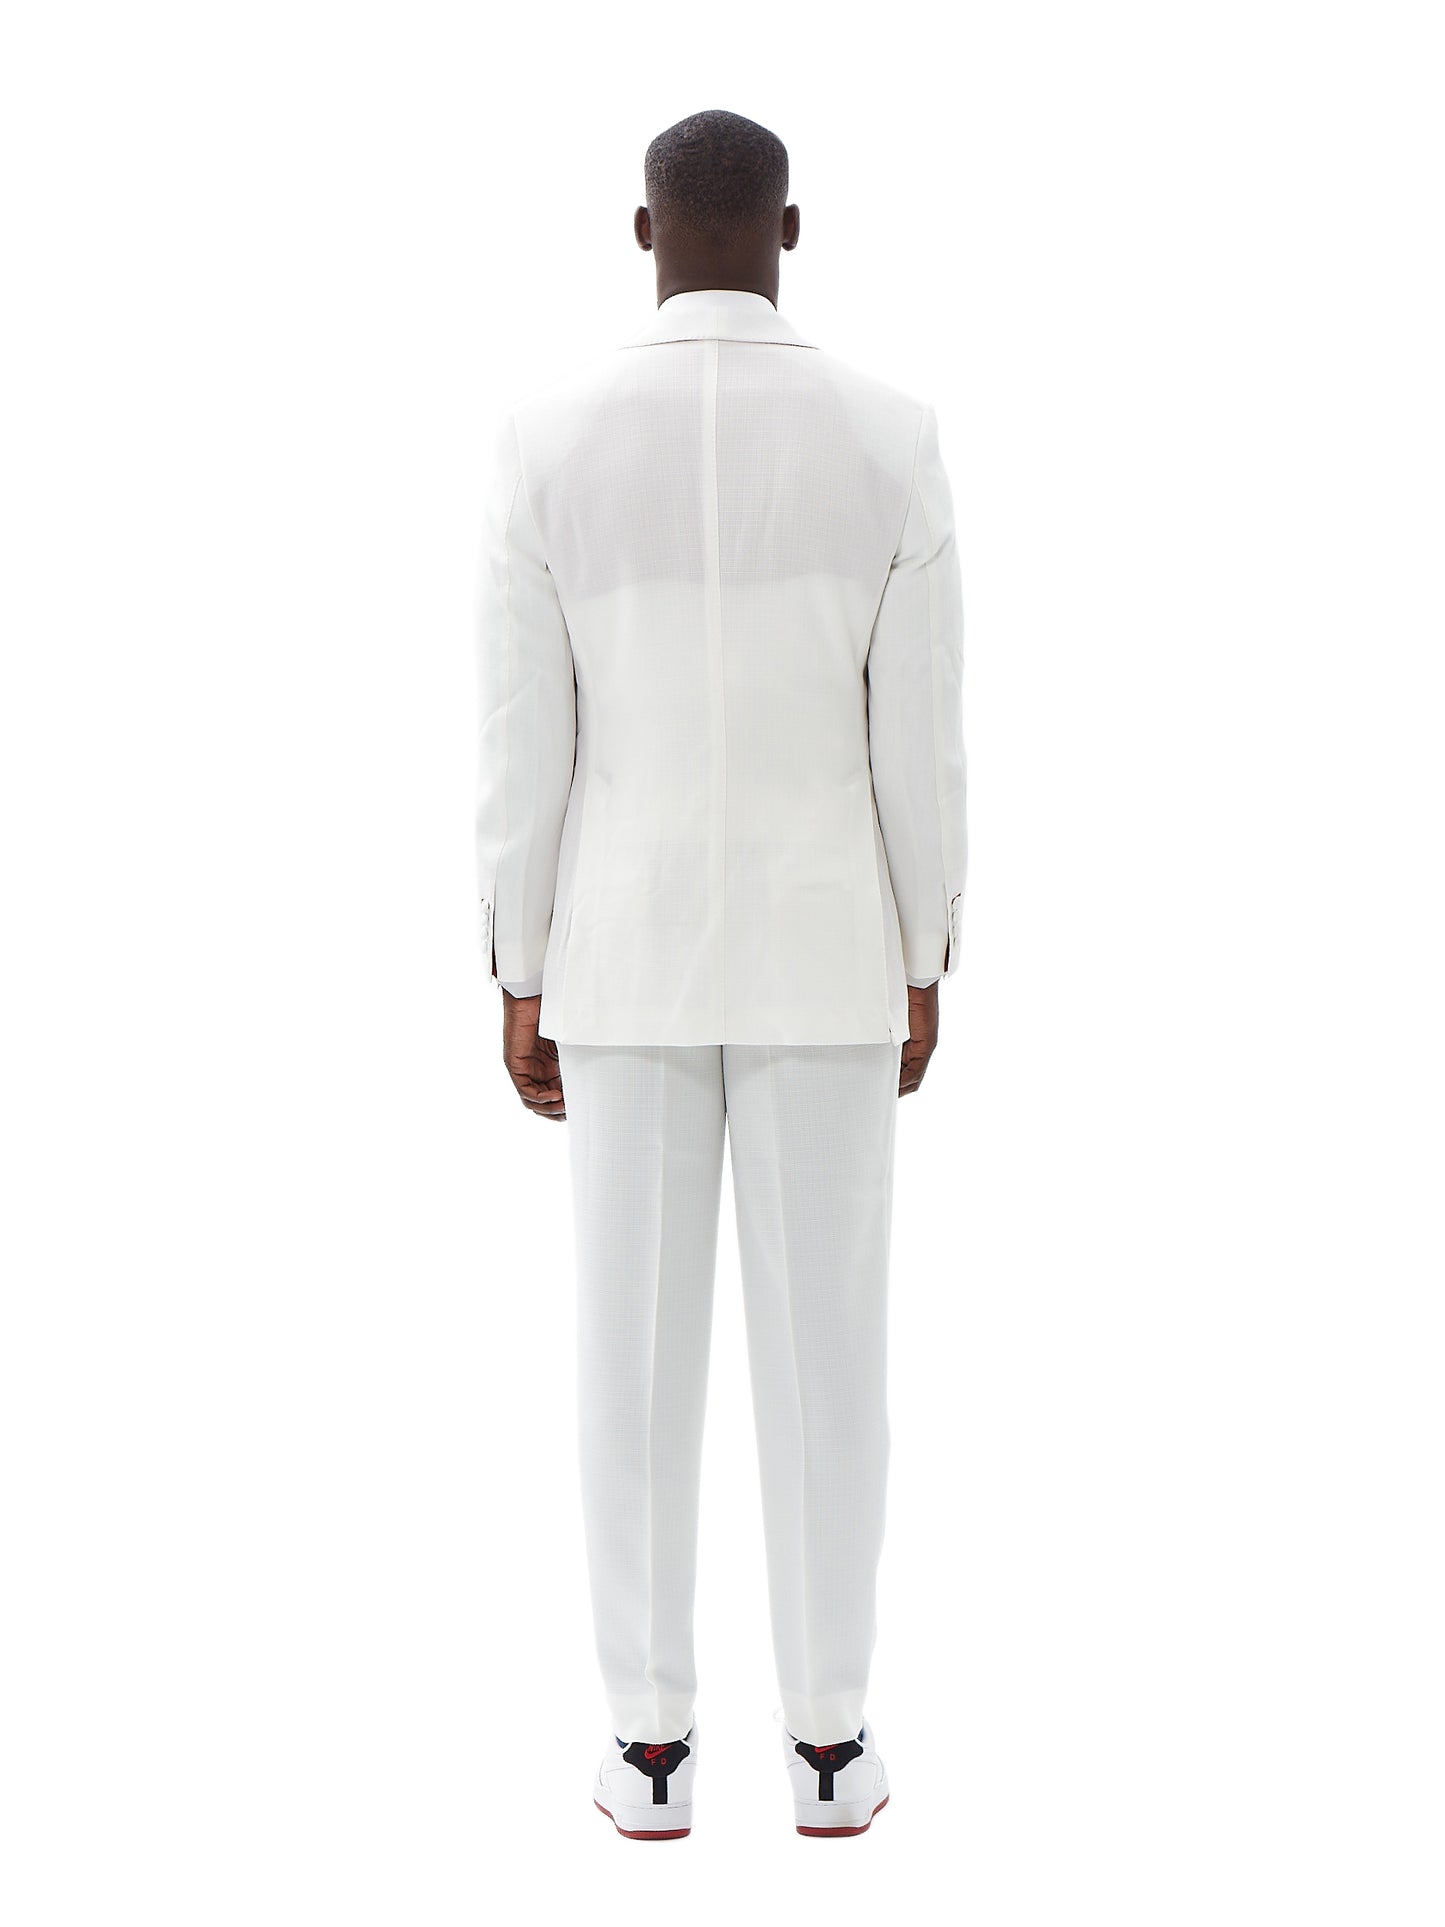 Boracay White Suit